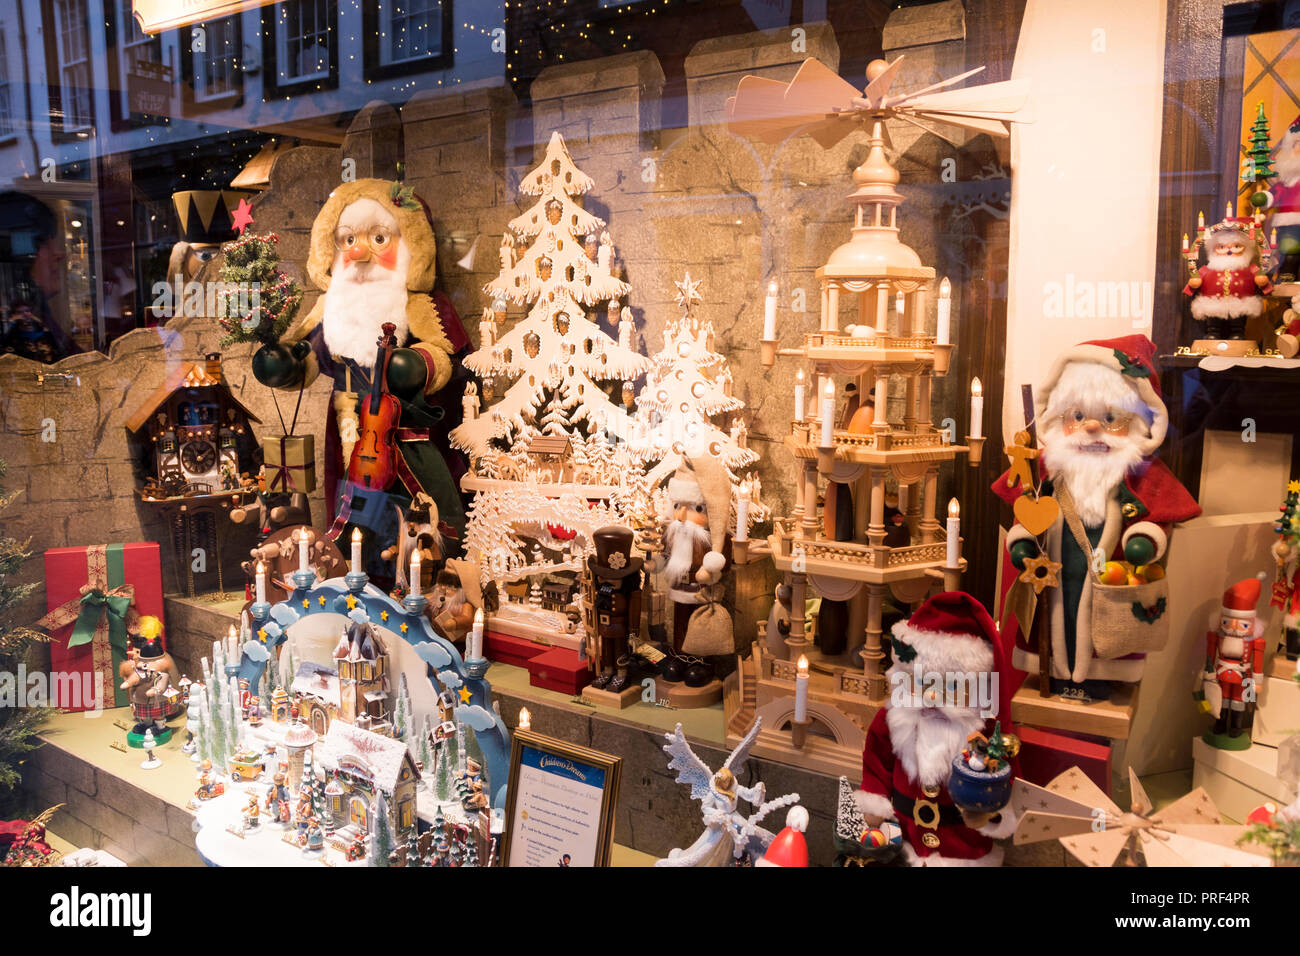 York, UK - 12 déc 2016 : Käthe Wohlfahrt au long de l'année boutique de Noël vitrine afficher le 12 décembre à New York, Stonegate Banque D'Images